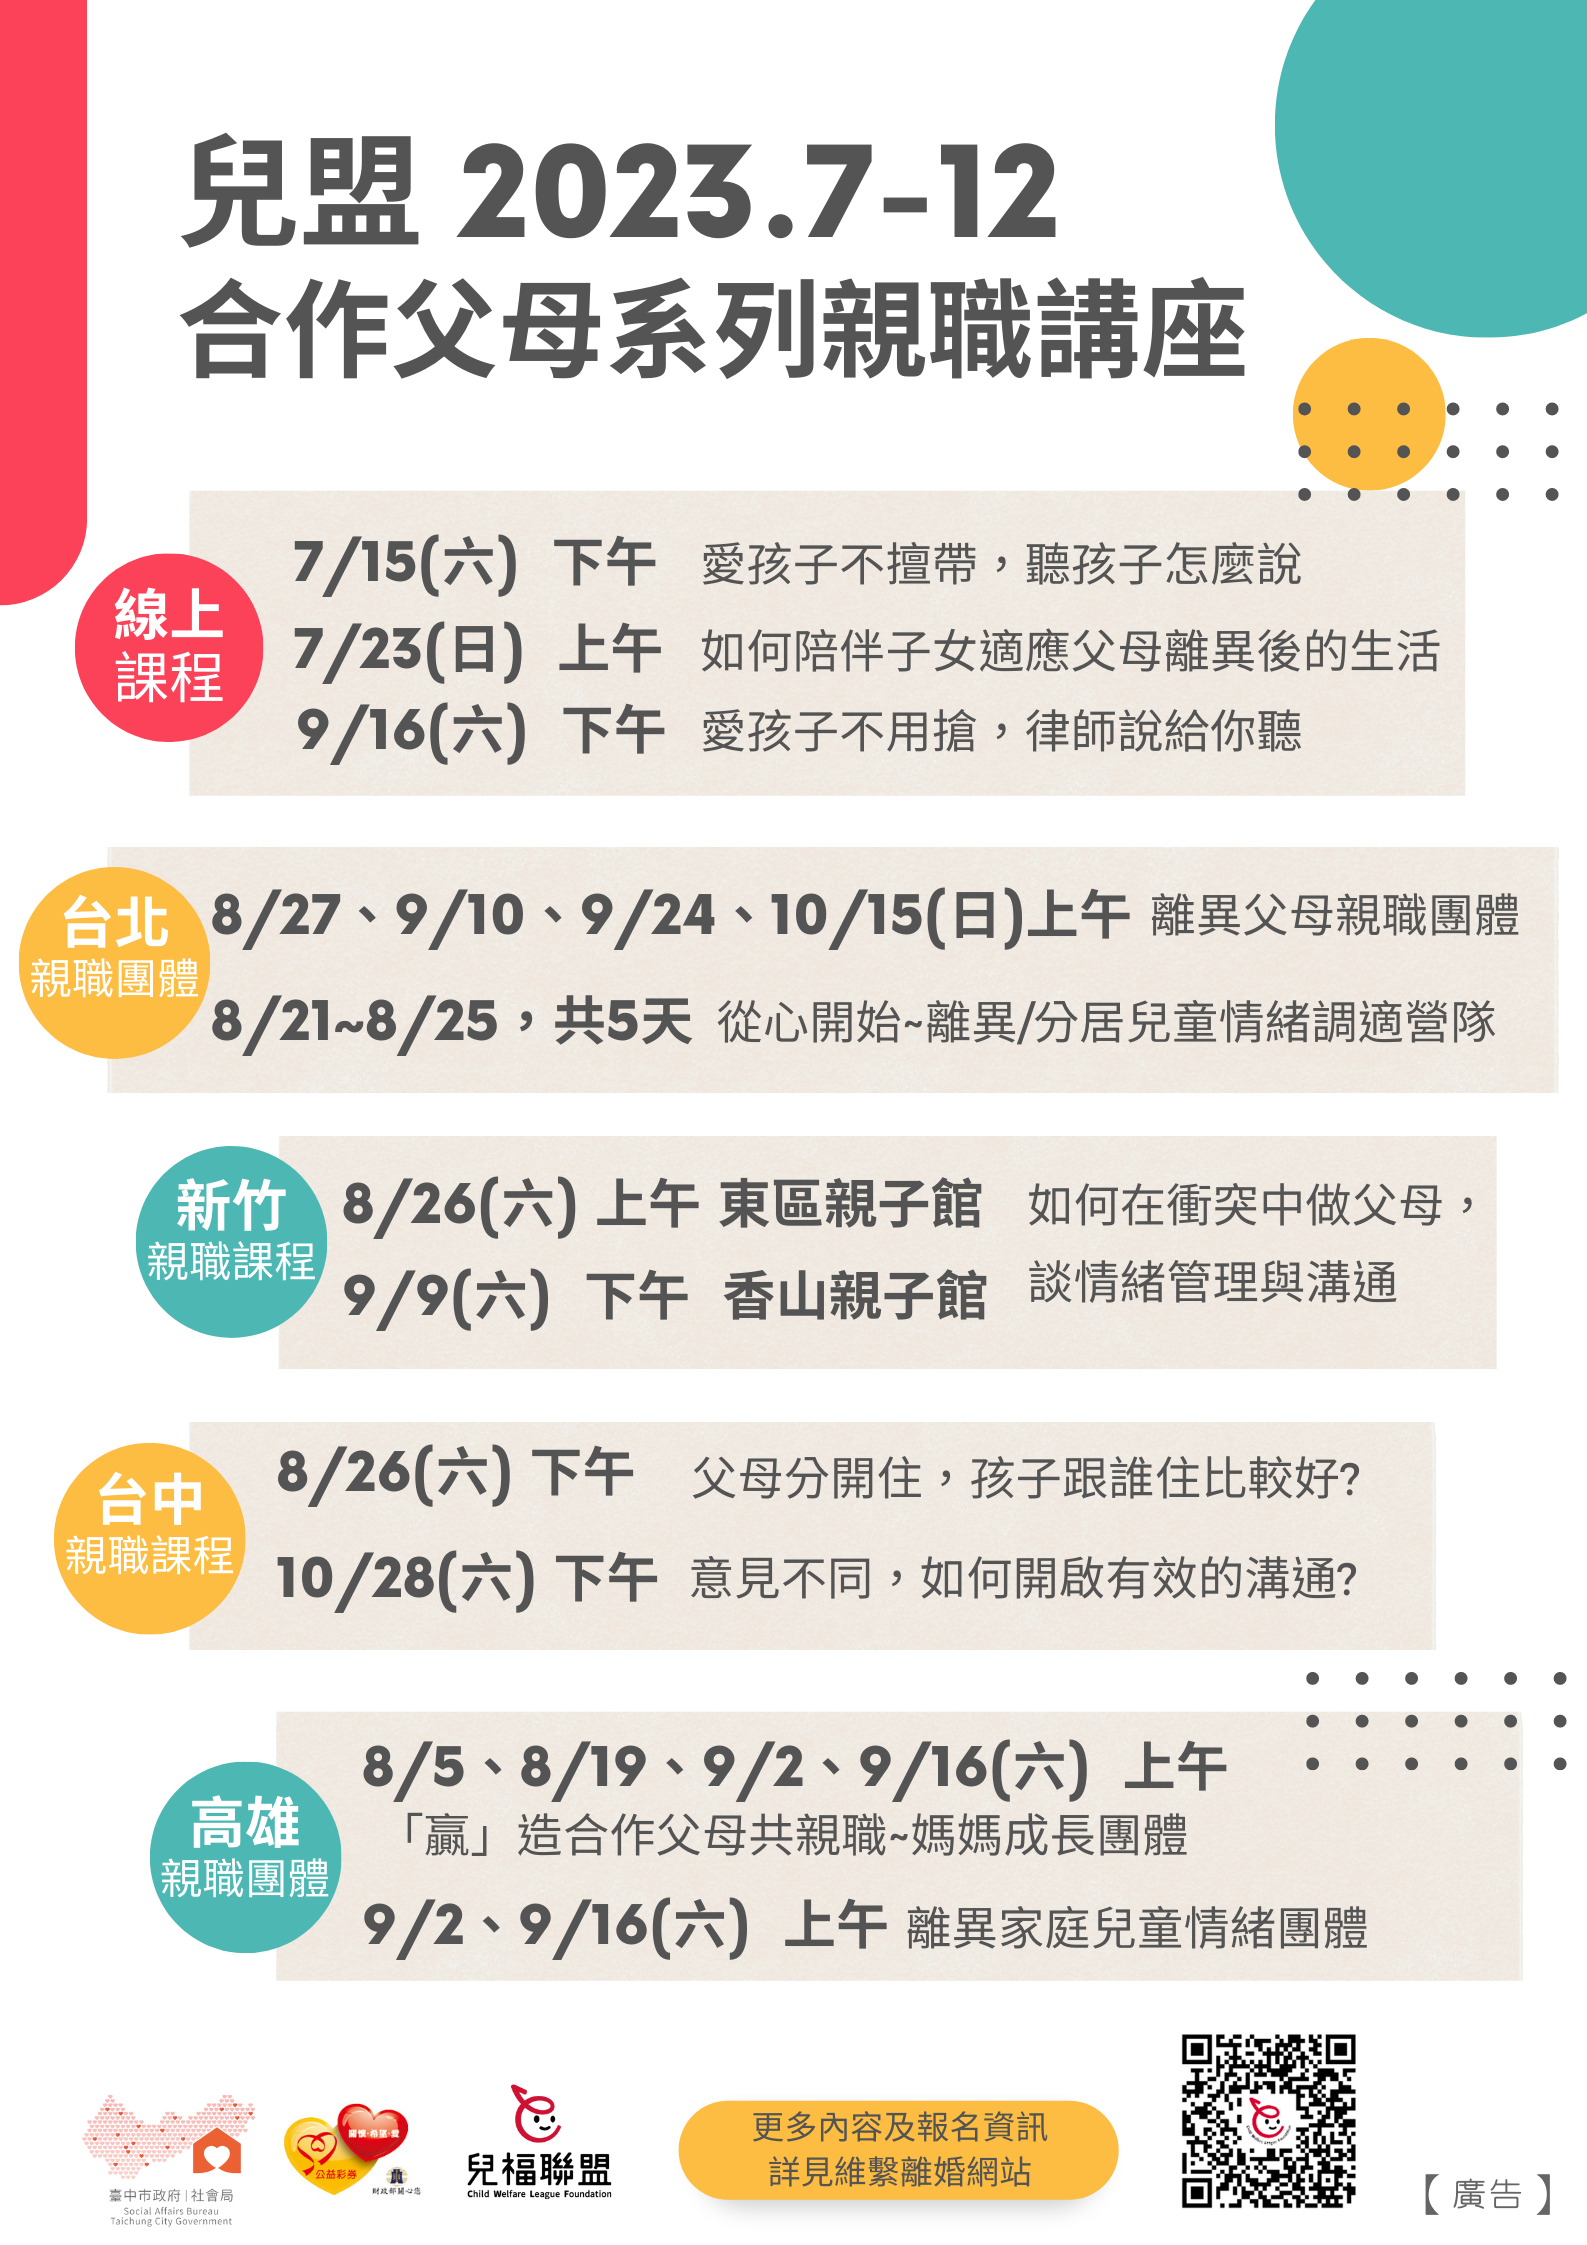 【活動訊息】2023.7-12月-合作父母系列親職講座 (免費)